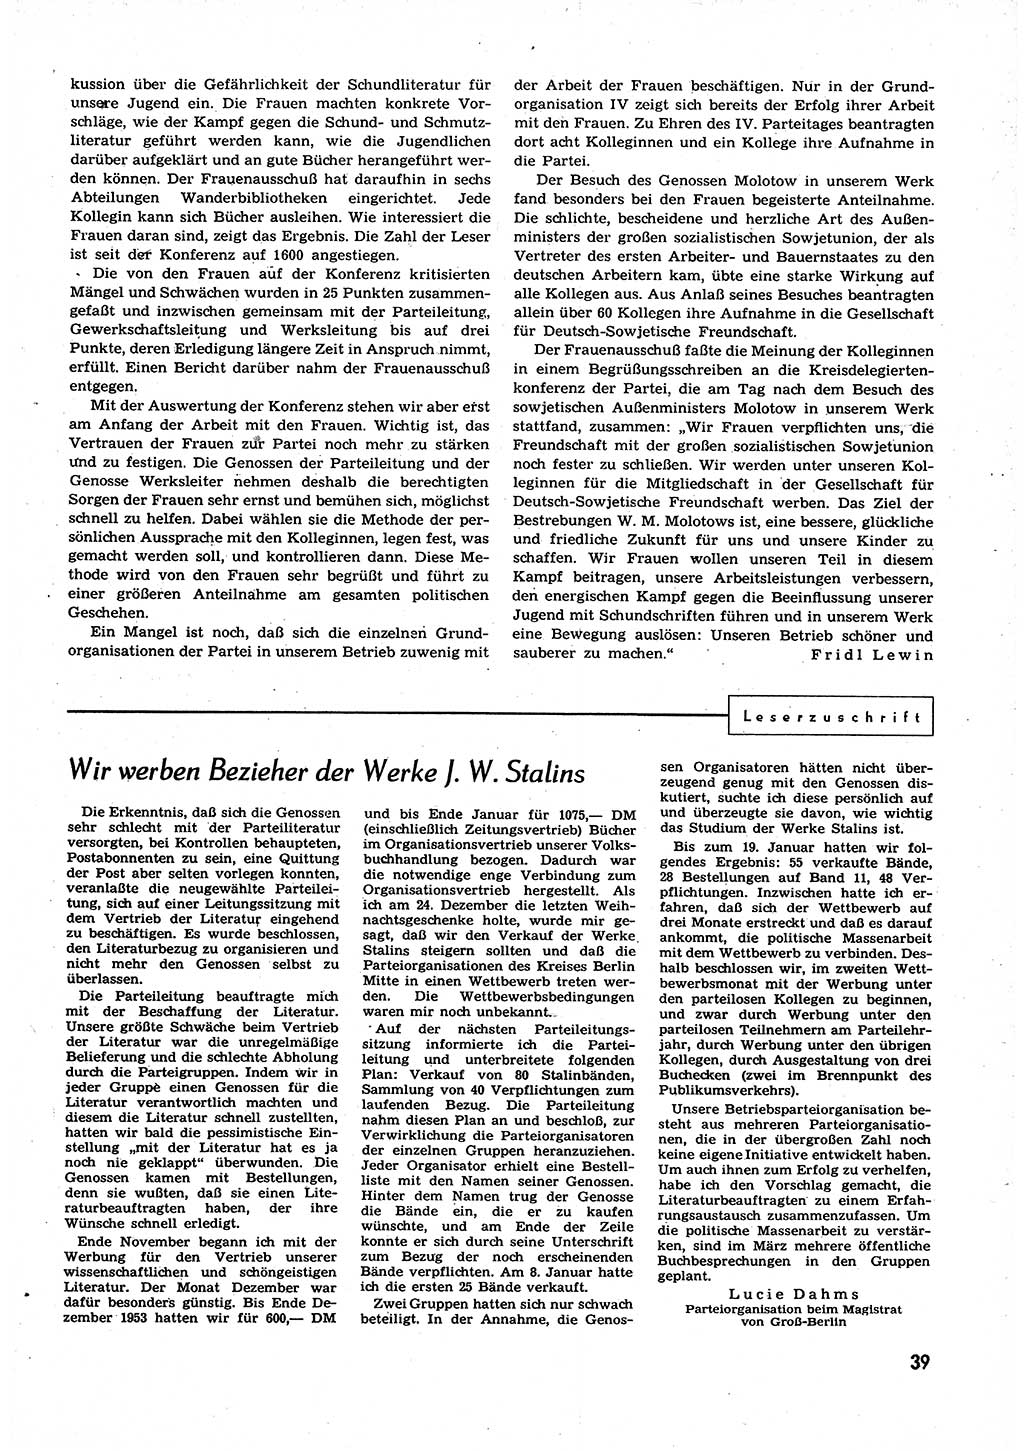 Neuer Weg (NW), Organ des Zentralkomitees (ZK) der SED (Sozialistische Einheitspartei Deutschlands) für alle Parteiarbeiter, 9. Jahrgang [Deutsche Demokratische Republik (DDR)] 1954, Heft 6/39 (NW ZK SED DDR 1954, H. 6/39)